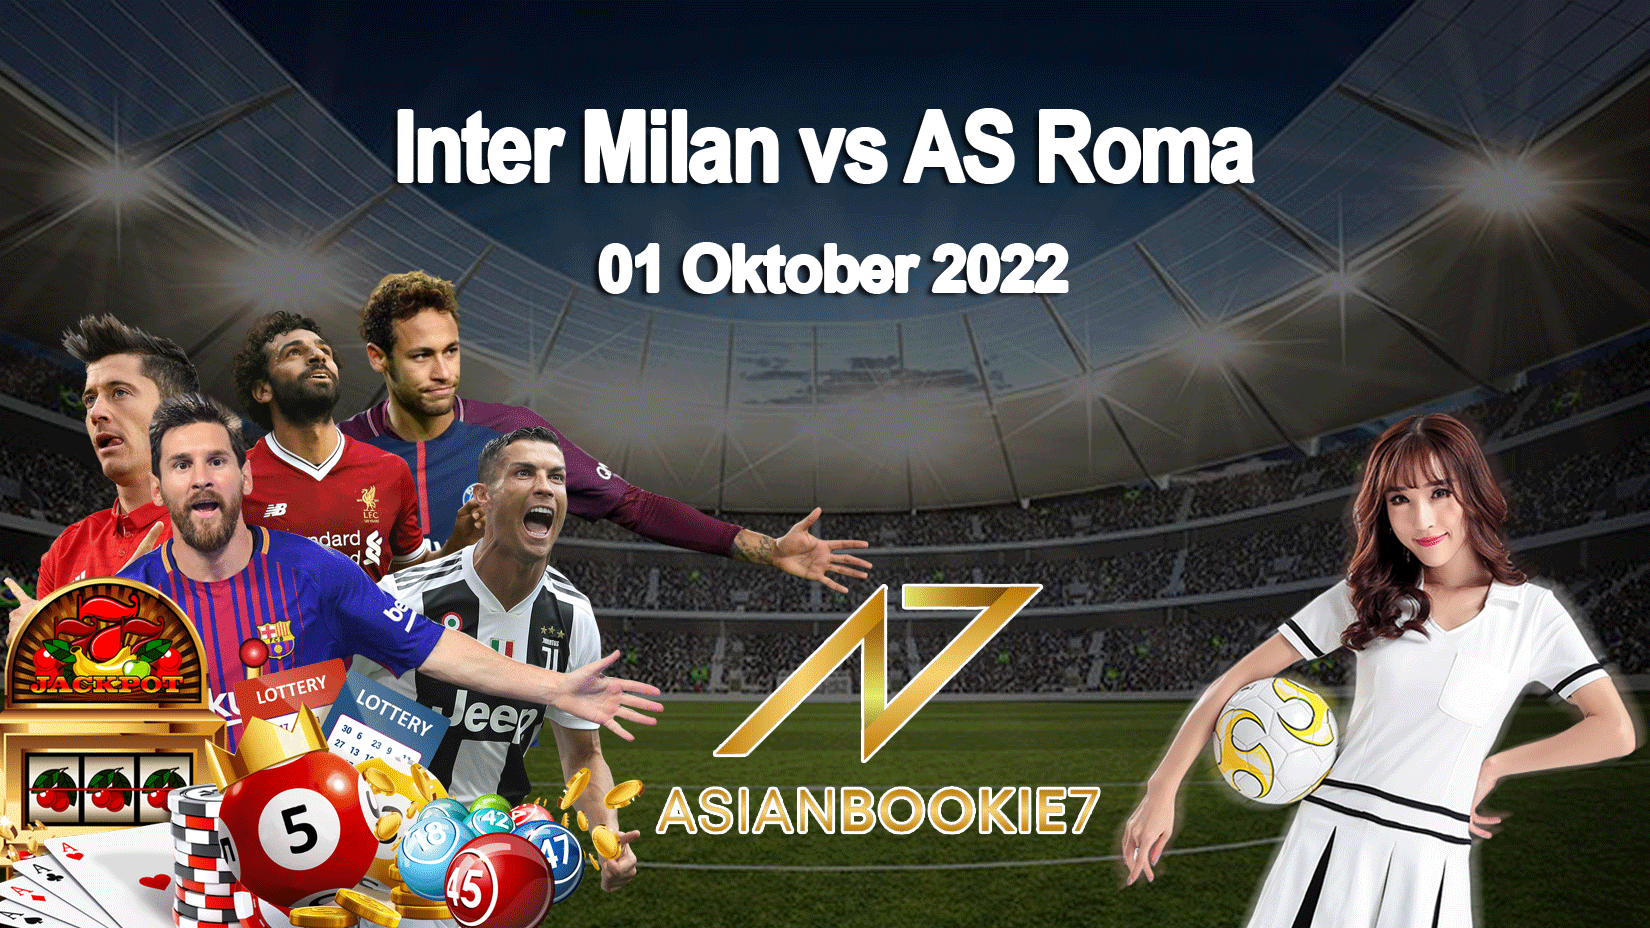 Prediksi Inter Milan vs AS Roma 01 Oktober 2022